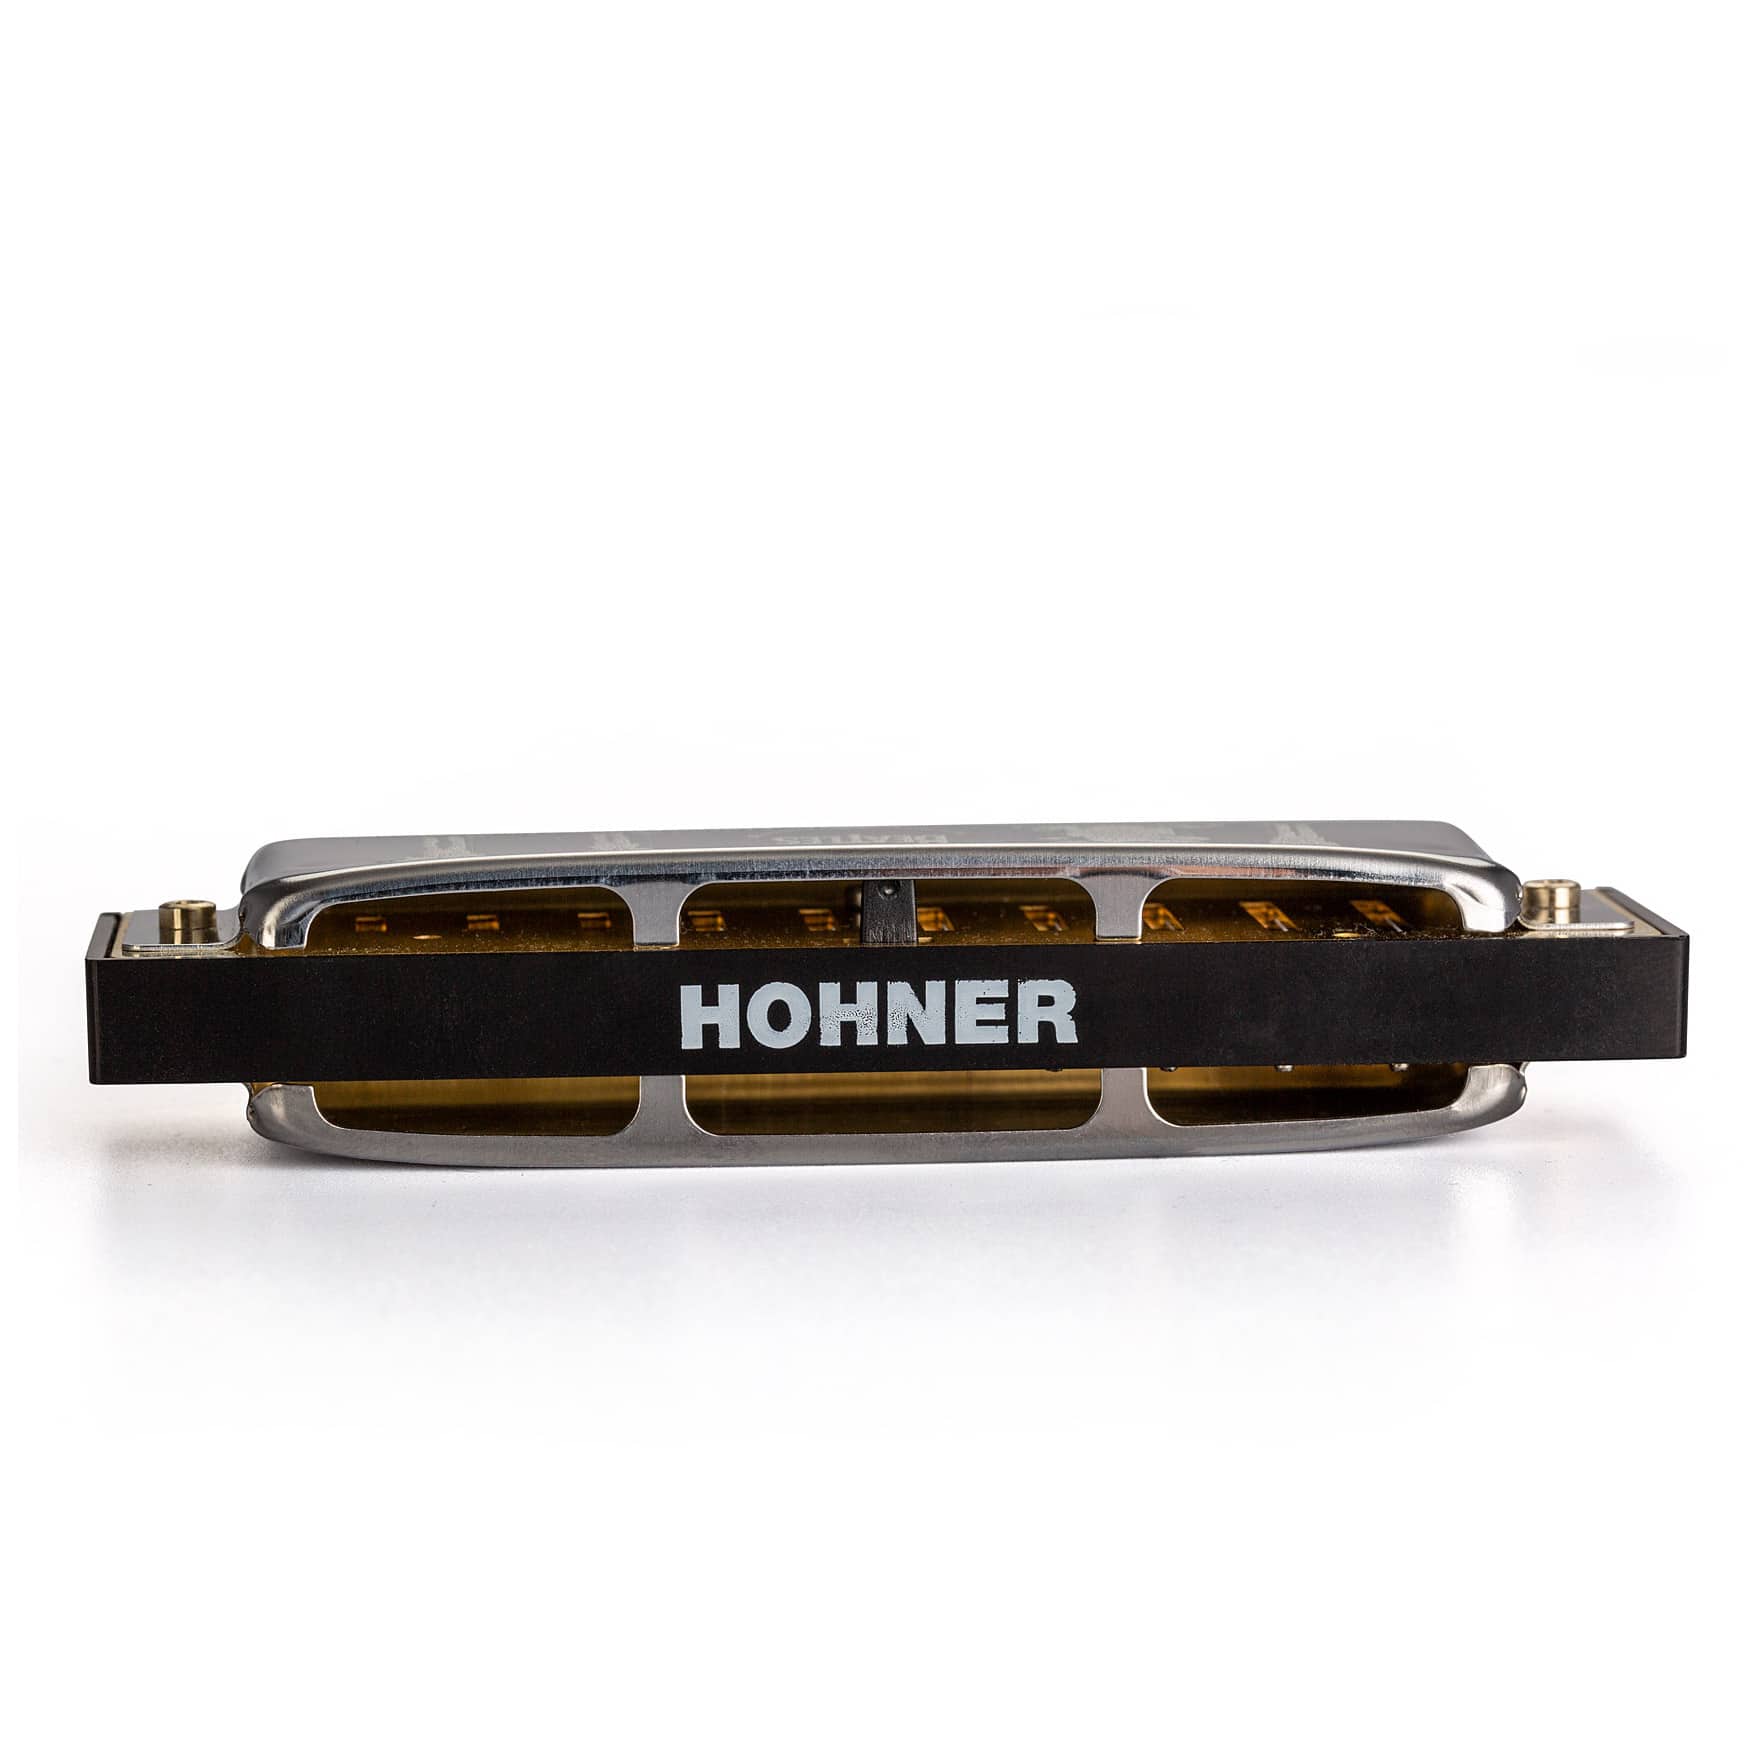 Hohner The Beatles Signature Mundharmonika 2